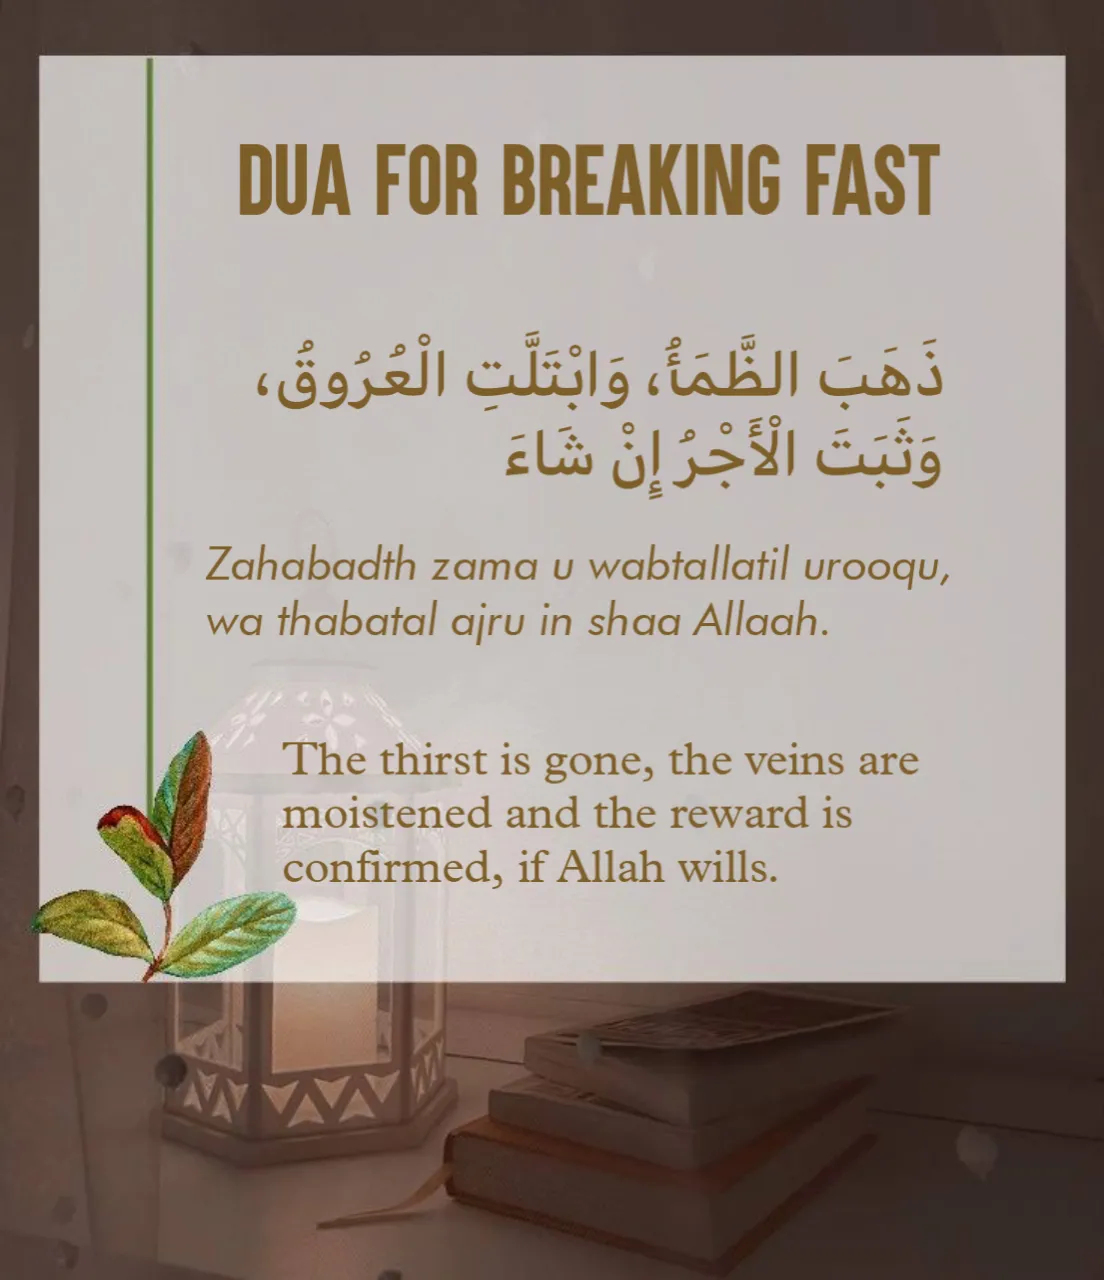 Dua For Breaking Fast in ramadan